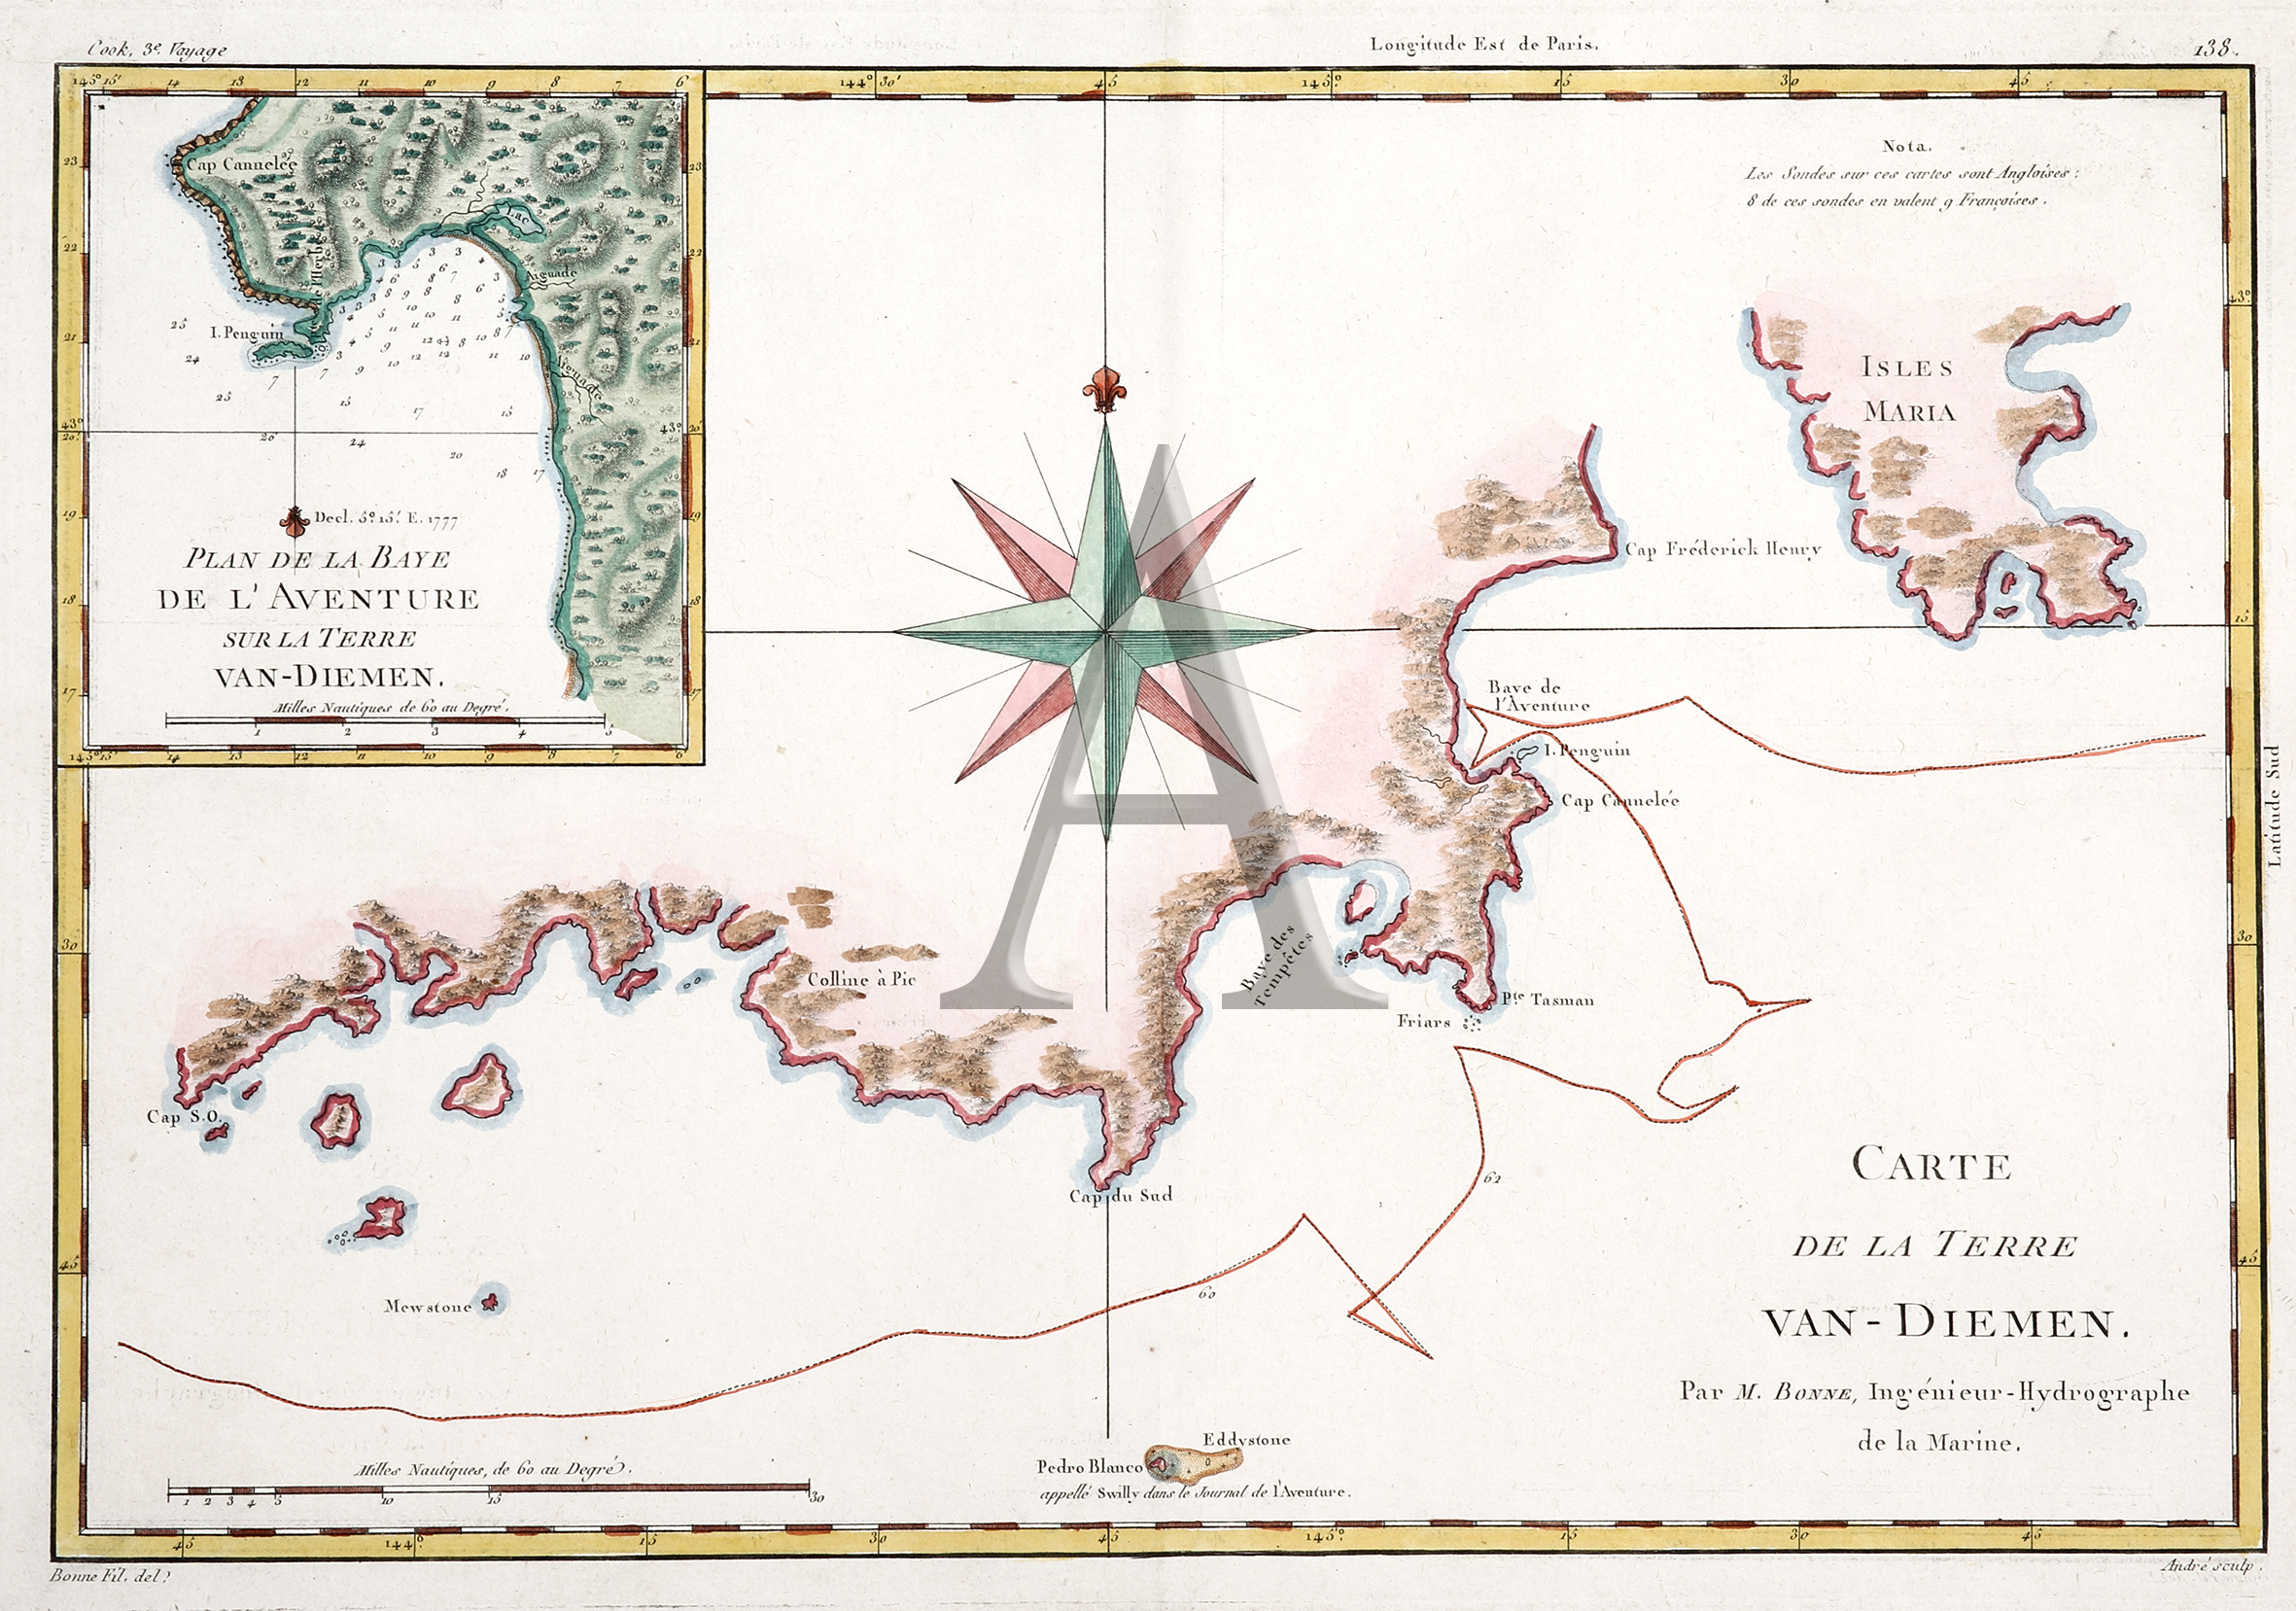 Carte de la Terre Van-Diemen. Par M.Bonne, Ingenieur-Hydrographe de la Marine. - Antique Map from 1788